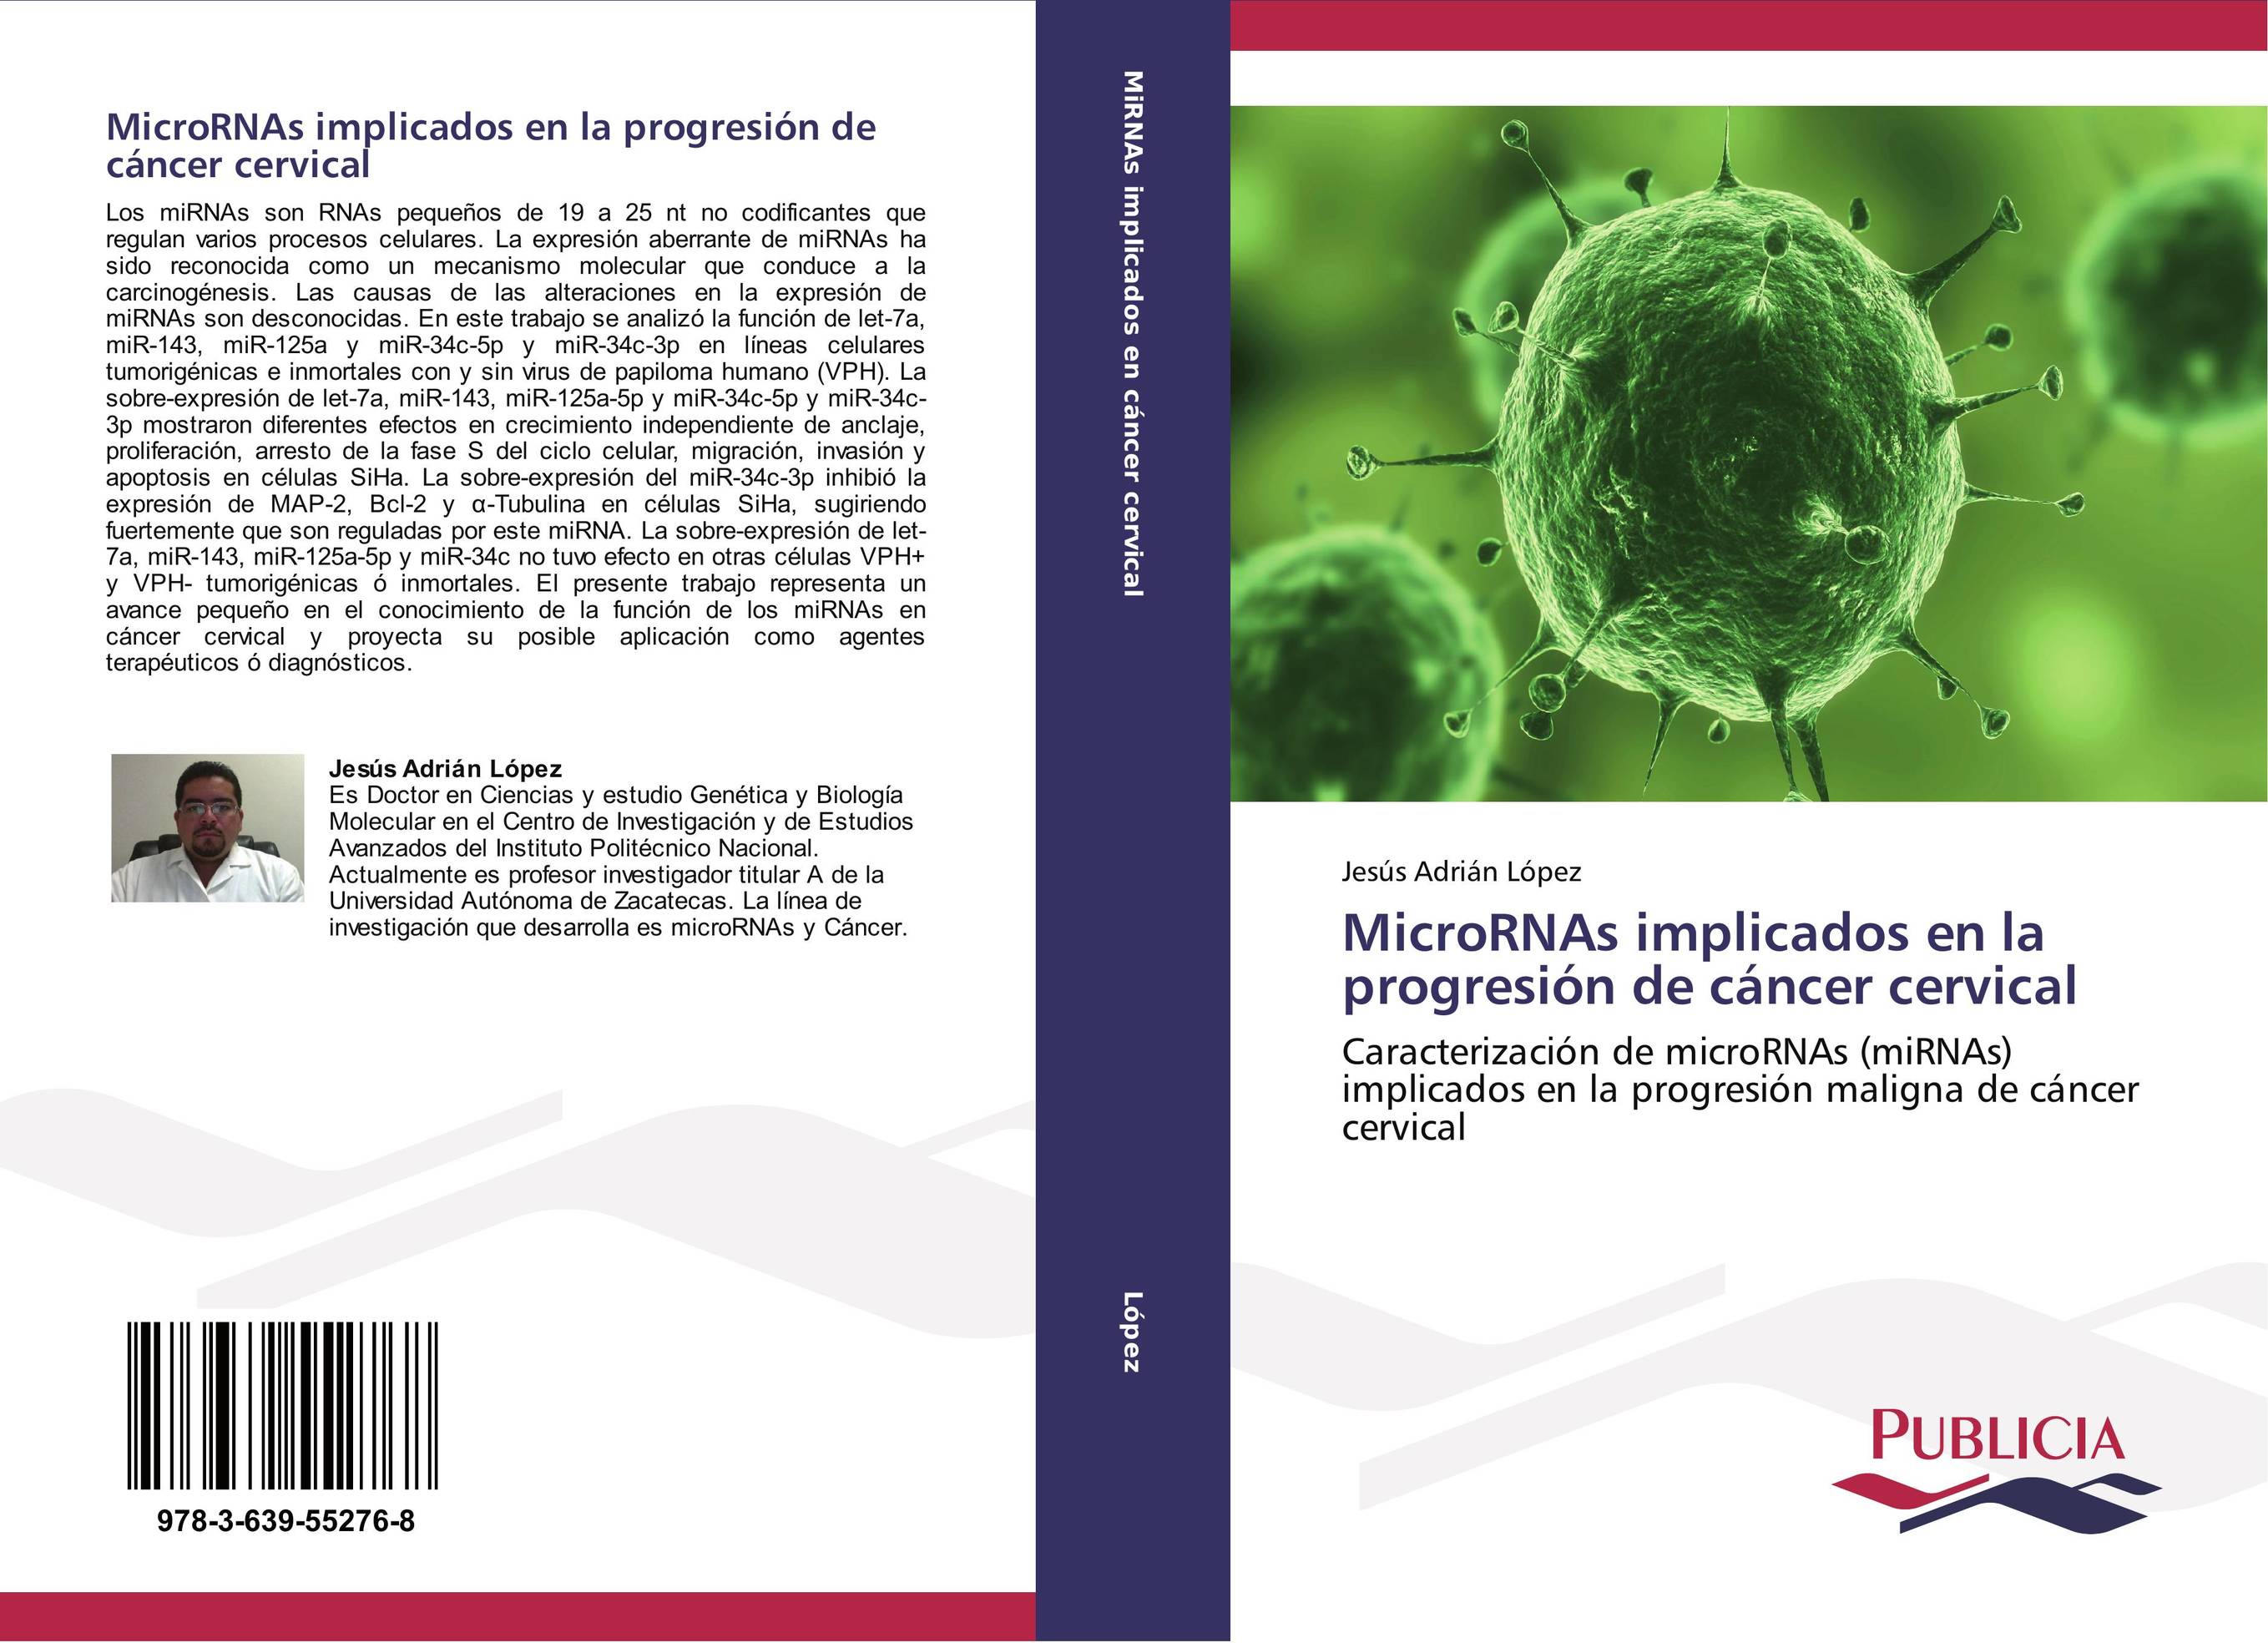 MicroRNAs implicados en la progresión de cáncer cervical